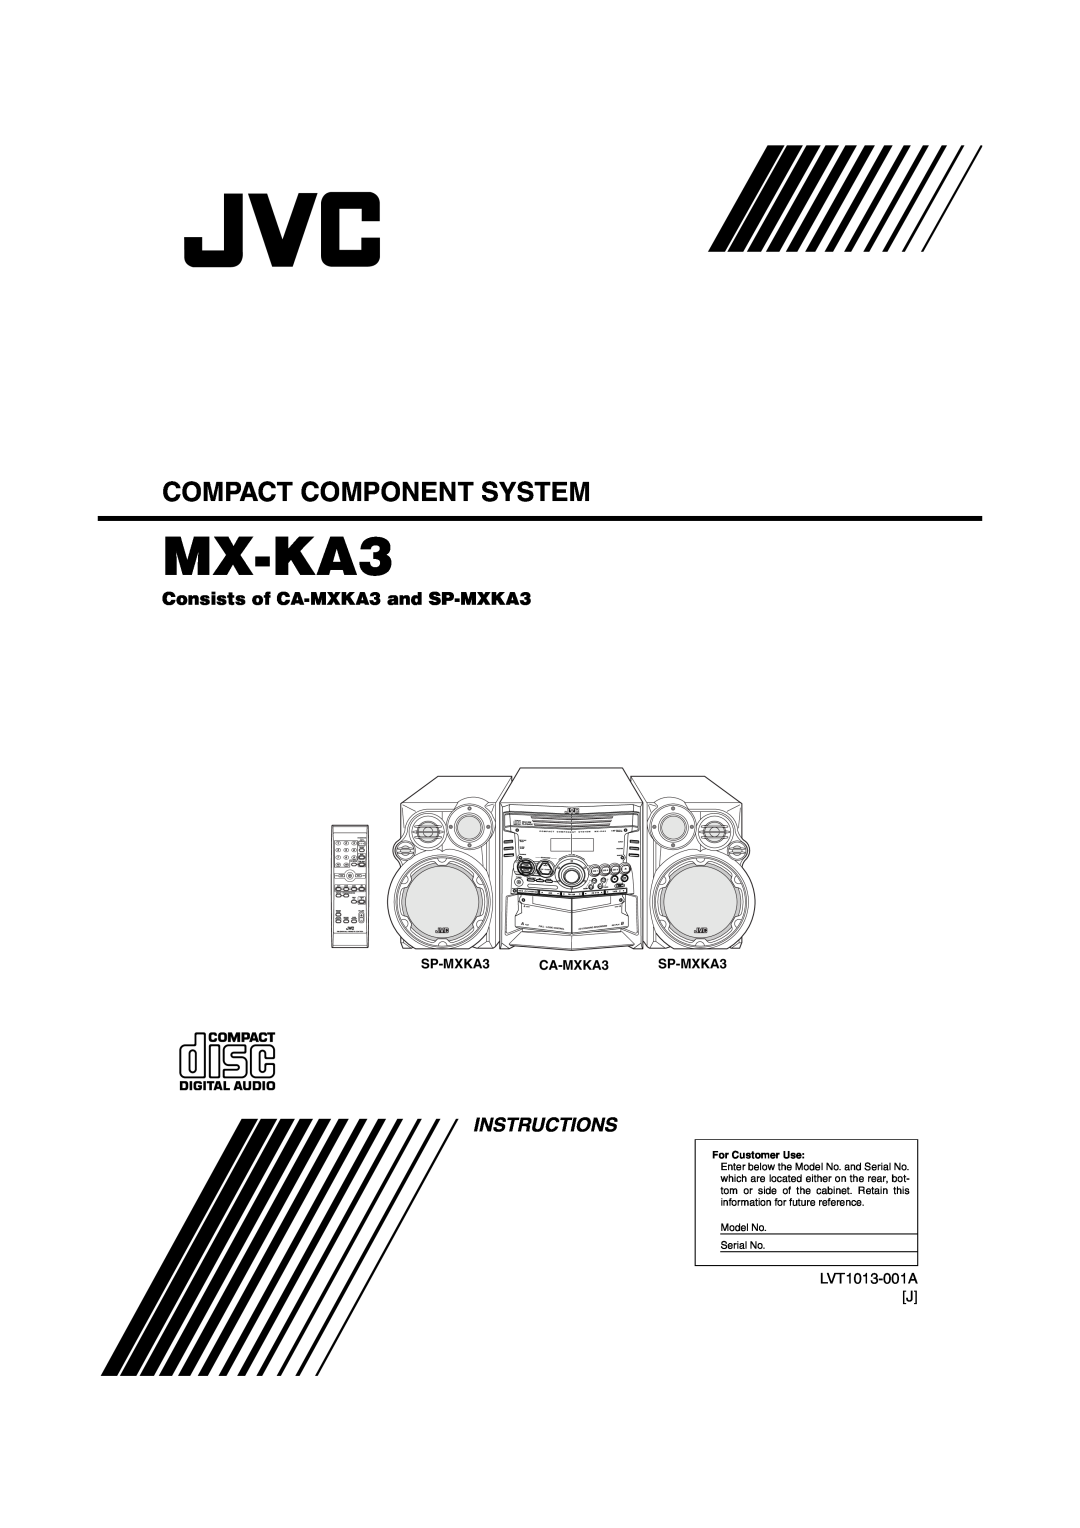 JVC manual Consists of CA-MXKA3and SP-MXKA3, MX-KA3, Compact Component System, Instructions, SP-MXKA3 CA-MXKA3 SP-MXKA3 